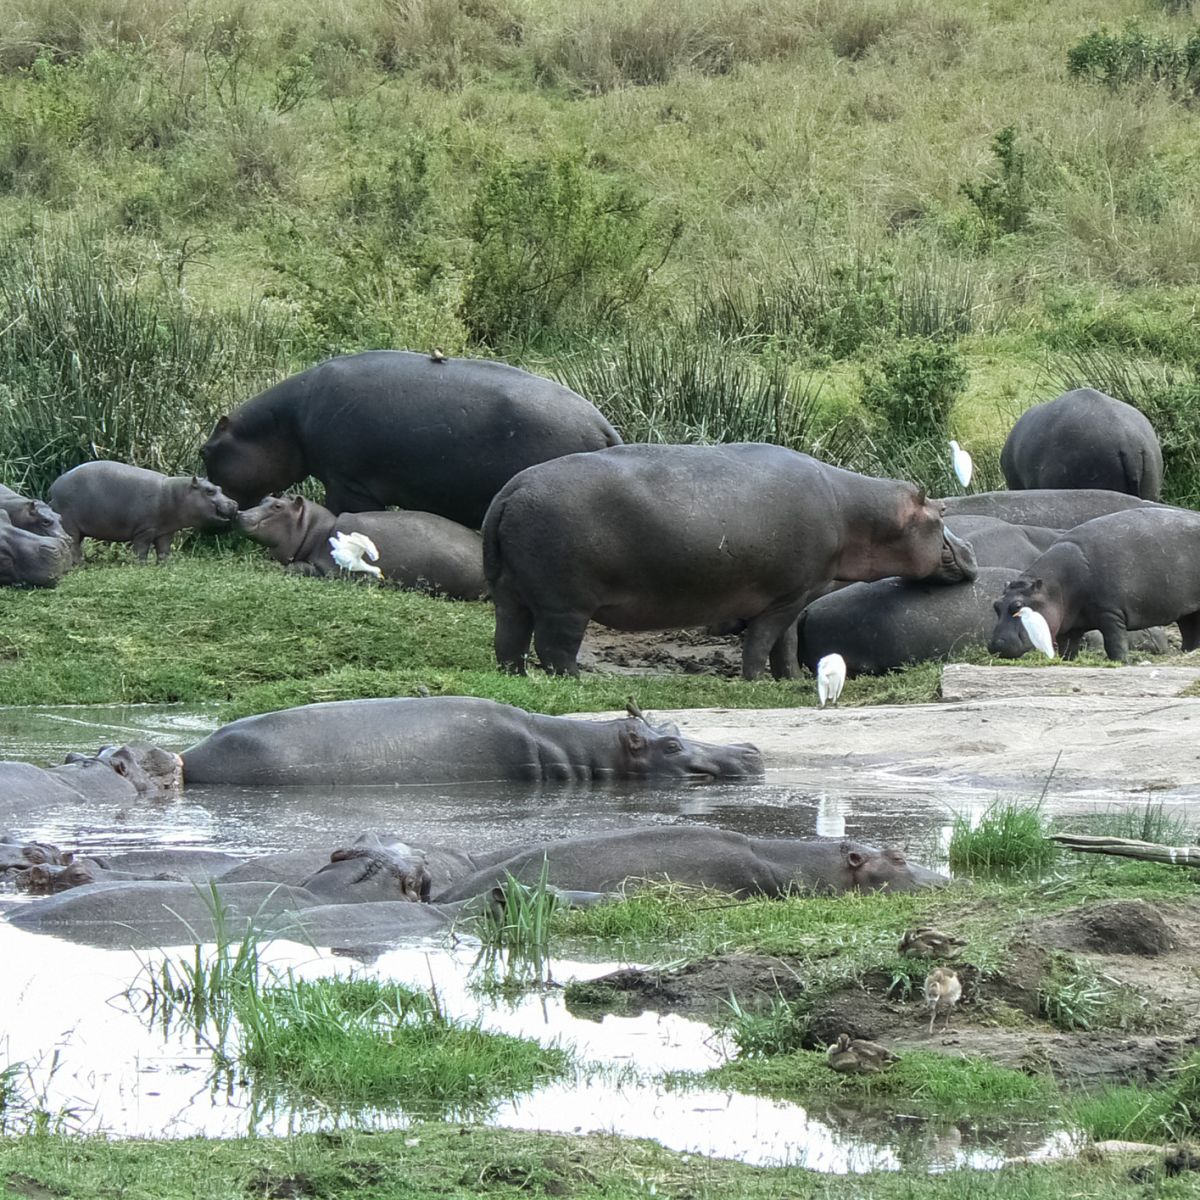 Hippos and egrets in swamp, Kenya safari